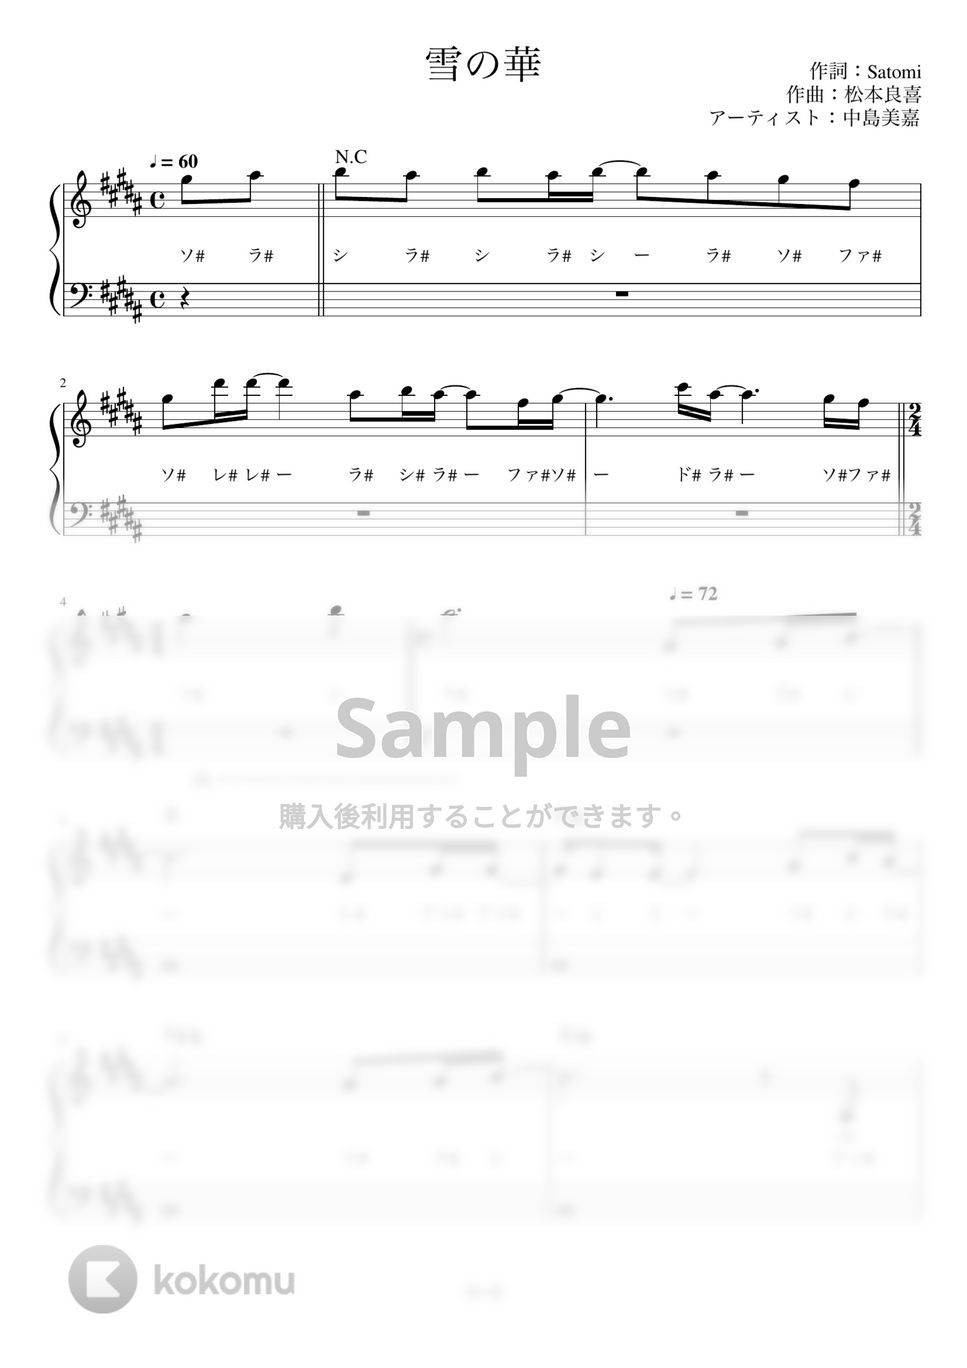 中島美嘉 - 雪の華 (かんたん 歌詞付き ドレミ付き 初心者) by piano.tokyo